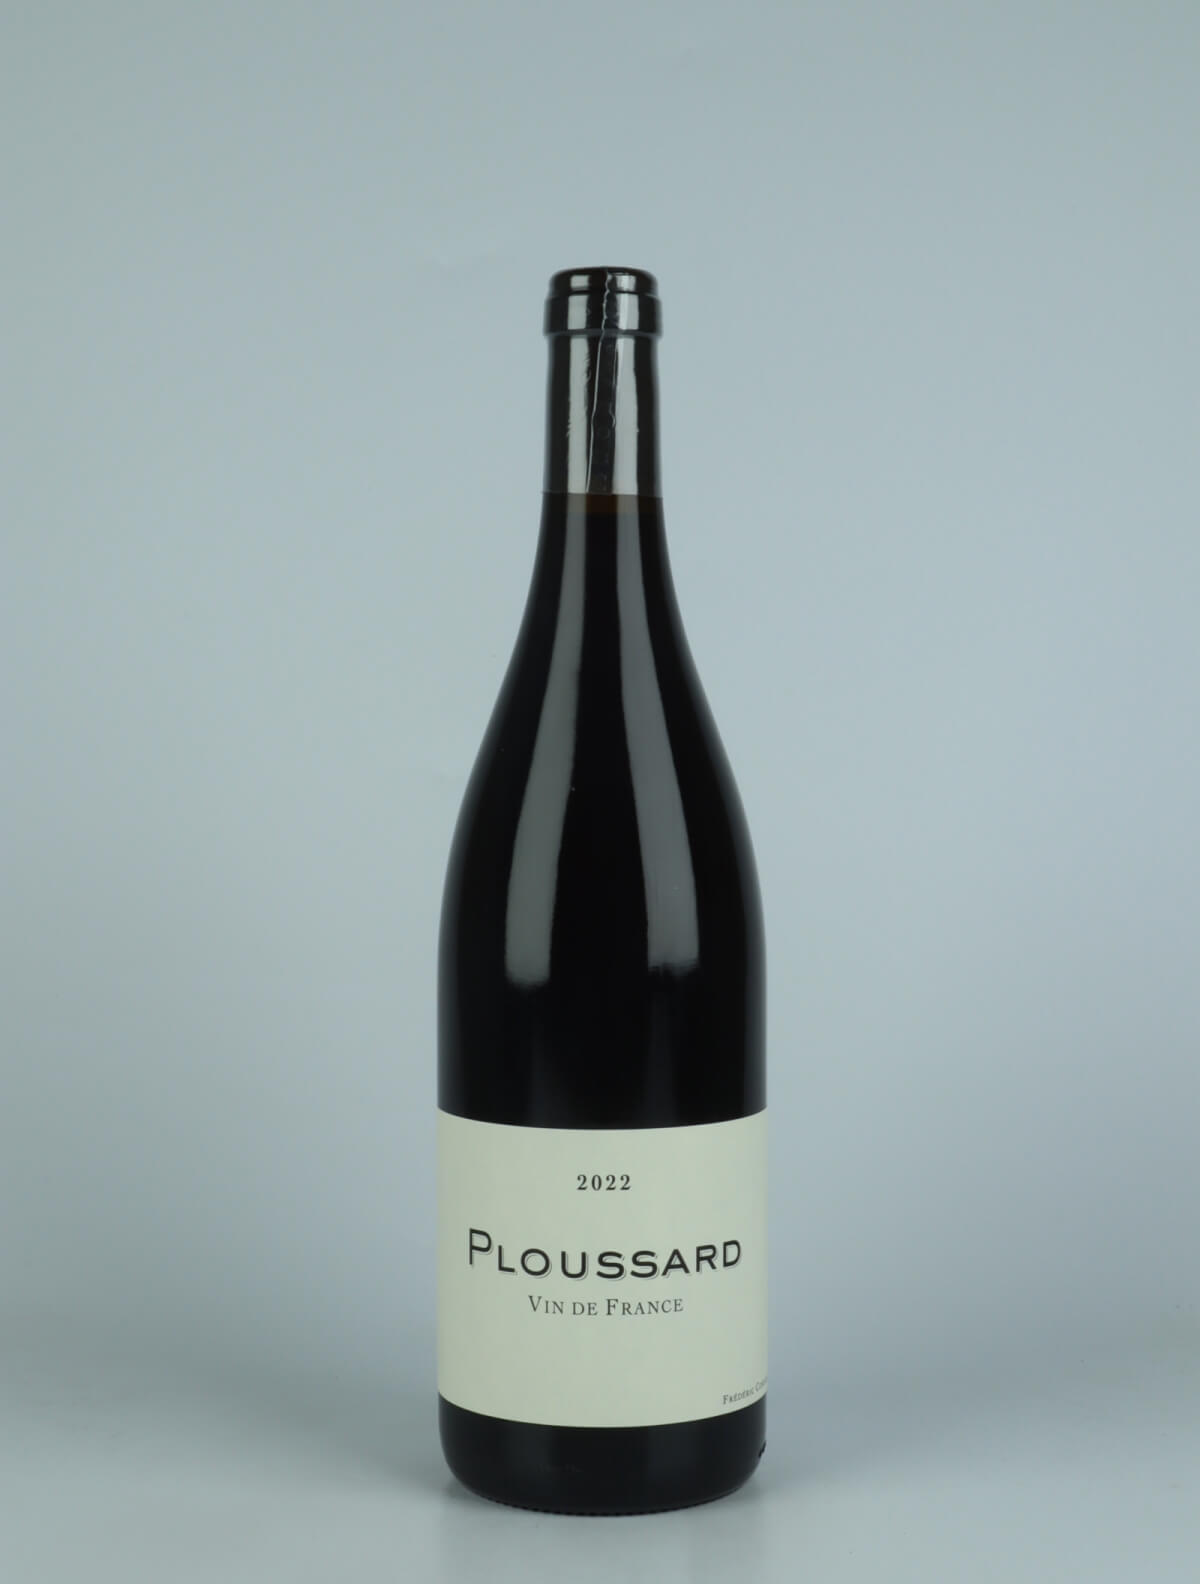 En flaske 2022 Ploussard Rødvin fra Frédéric Cossard, Jura i Frankrig